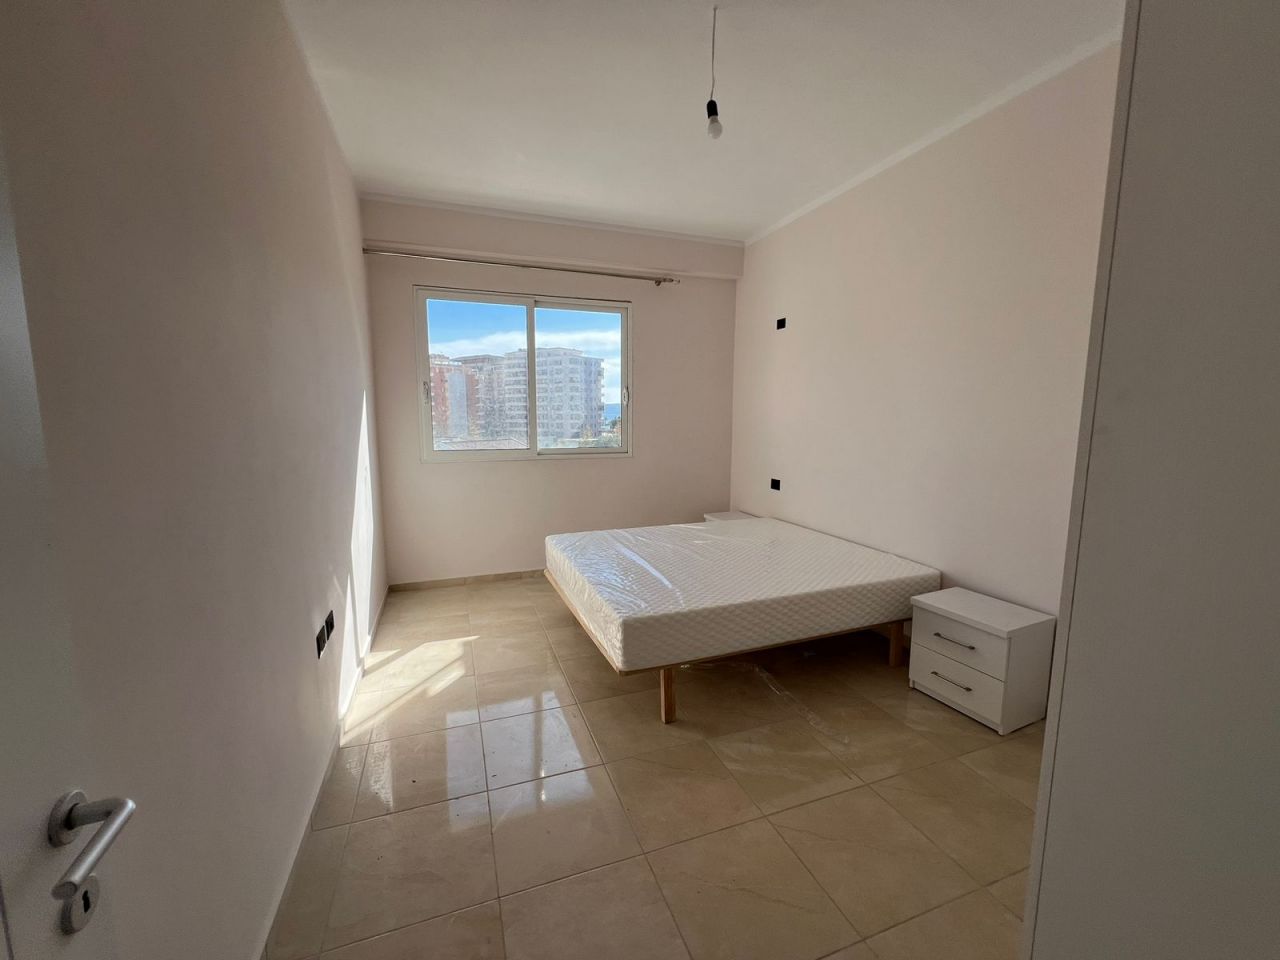 Продается квартира во Влере, Албания, расположенная в хорошем районе, со всеми удобствами рядом